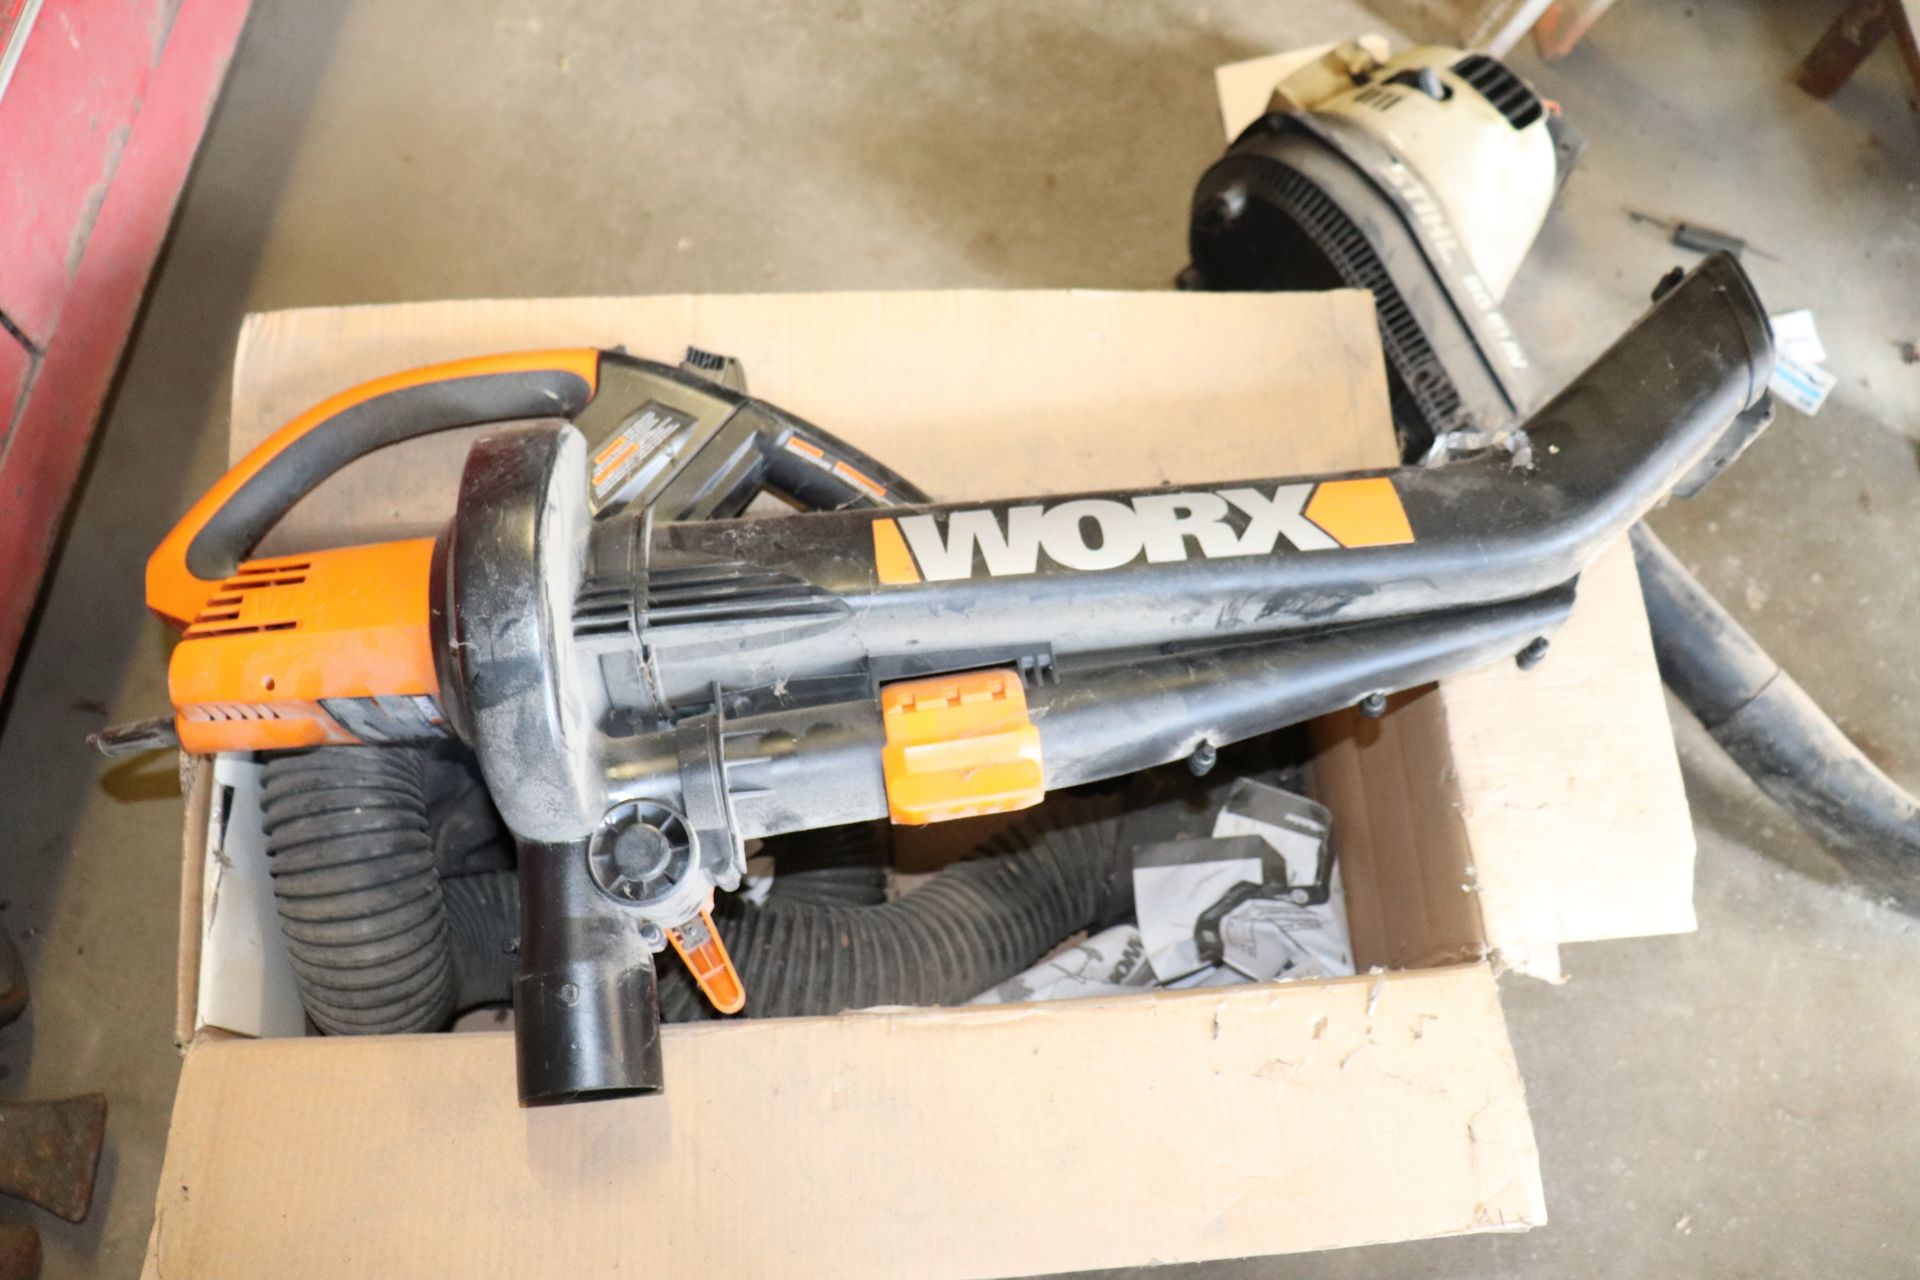 Worx electric leaf blower, model WG500